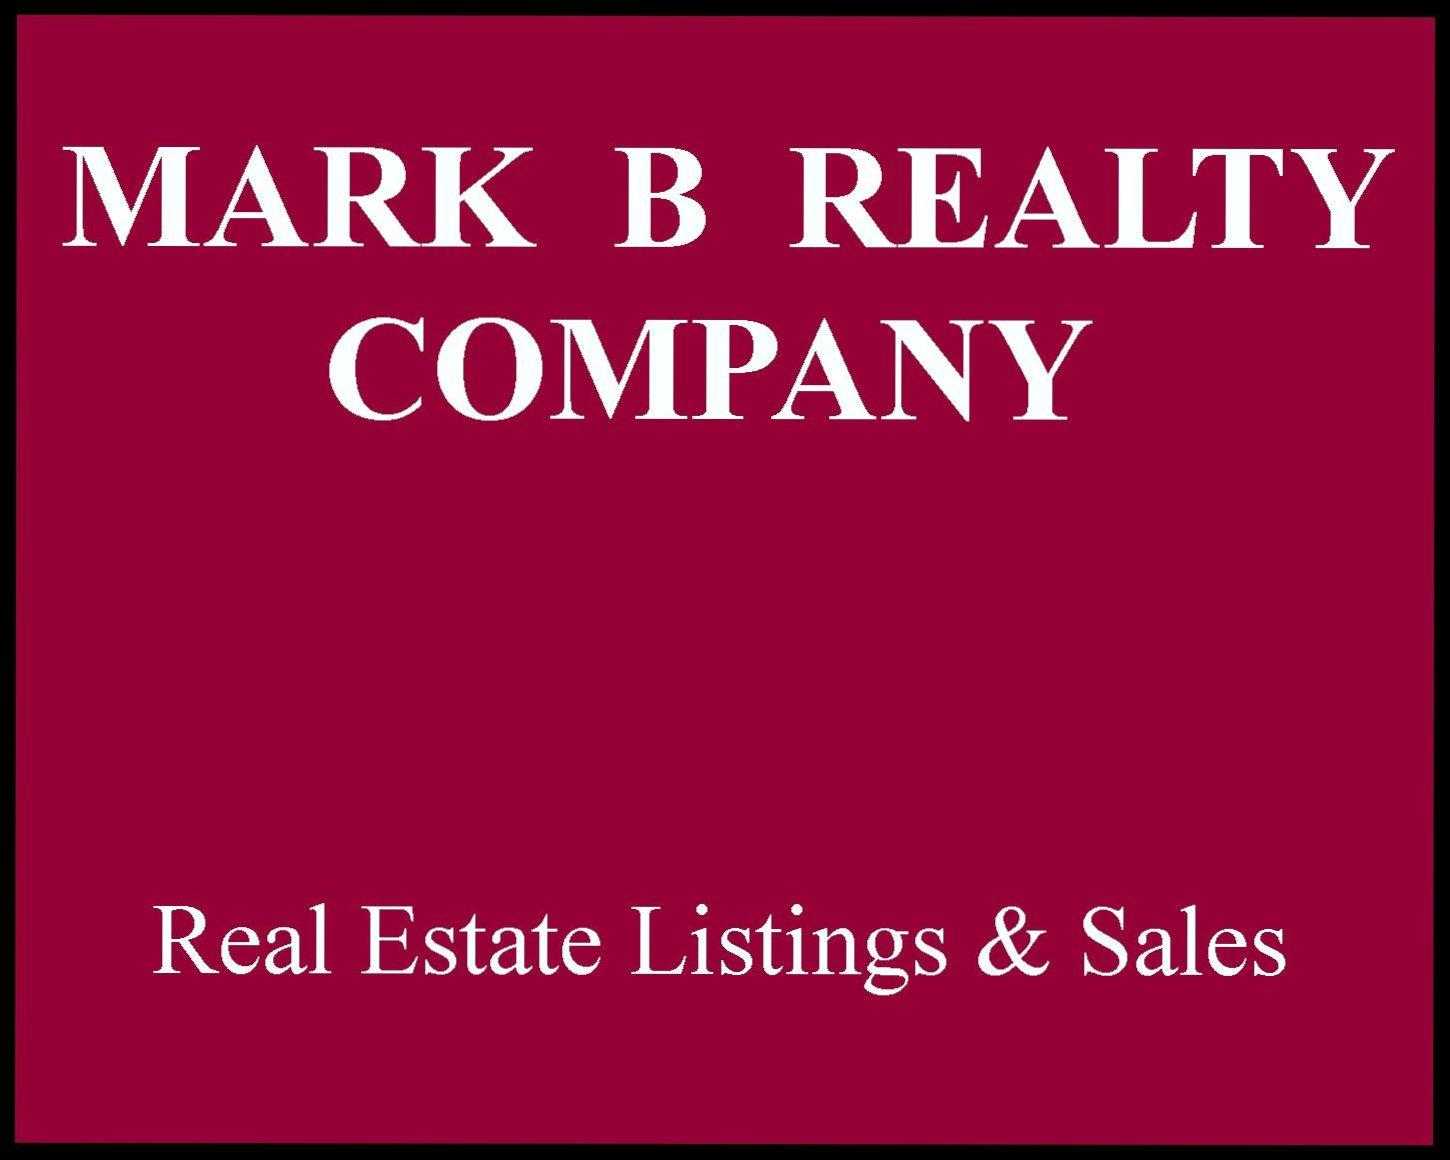 Mark B Realty Company